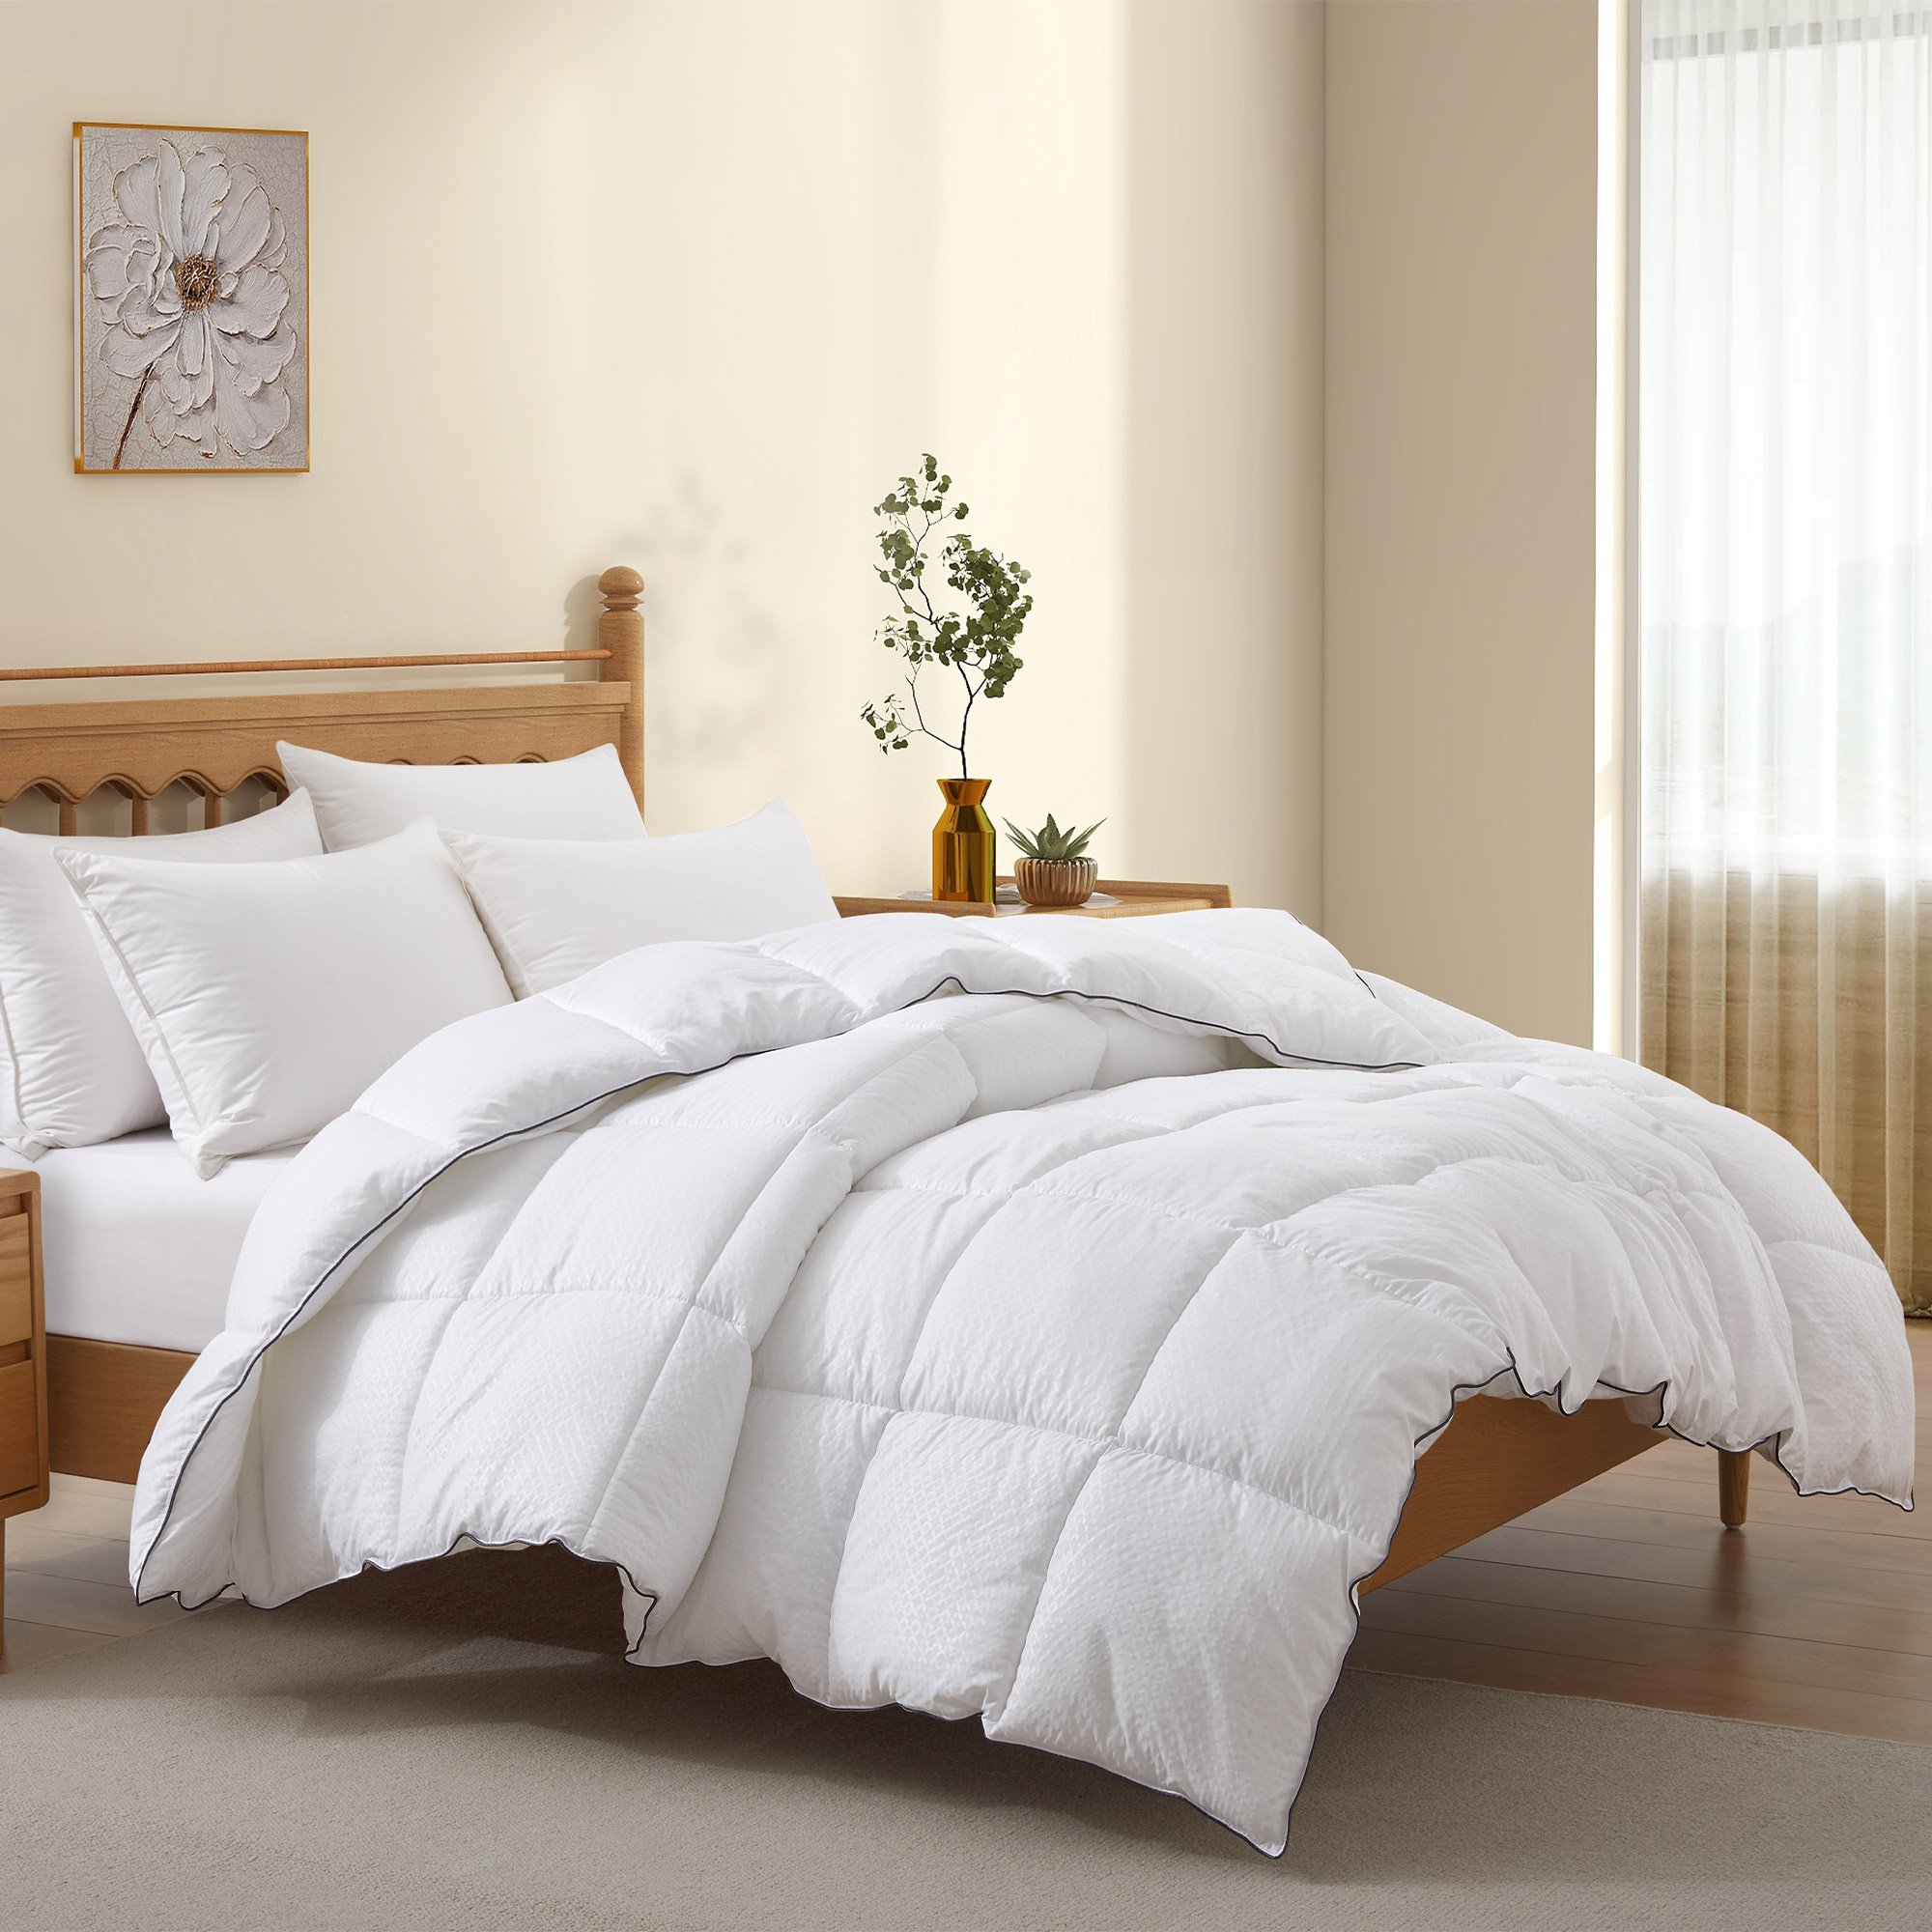 All Seasons Down Alternative Comforter - White, Full/Queen